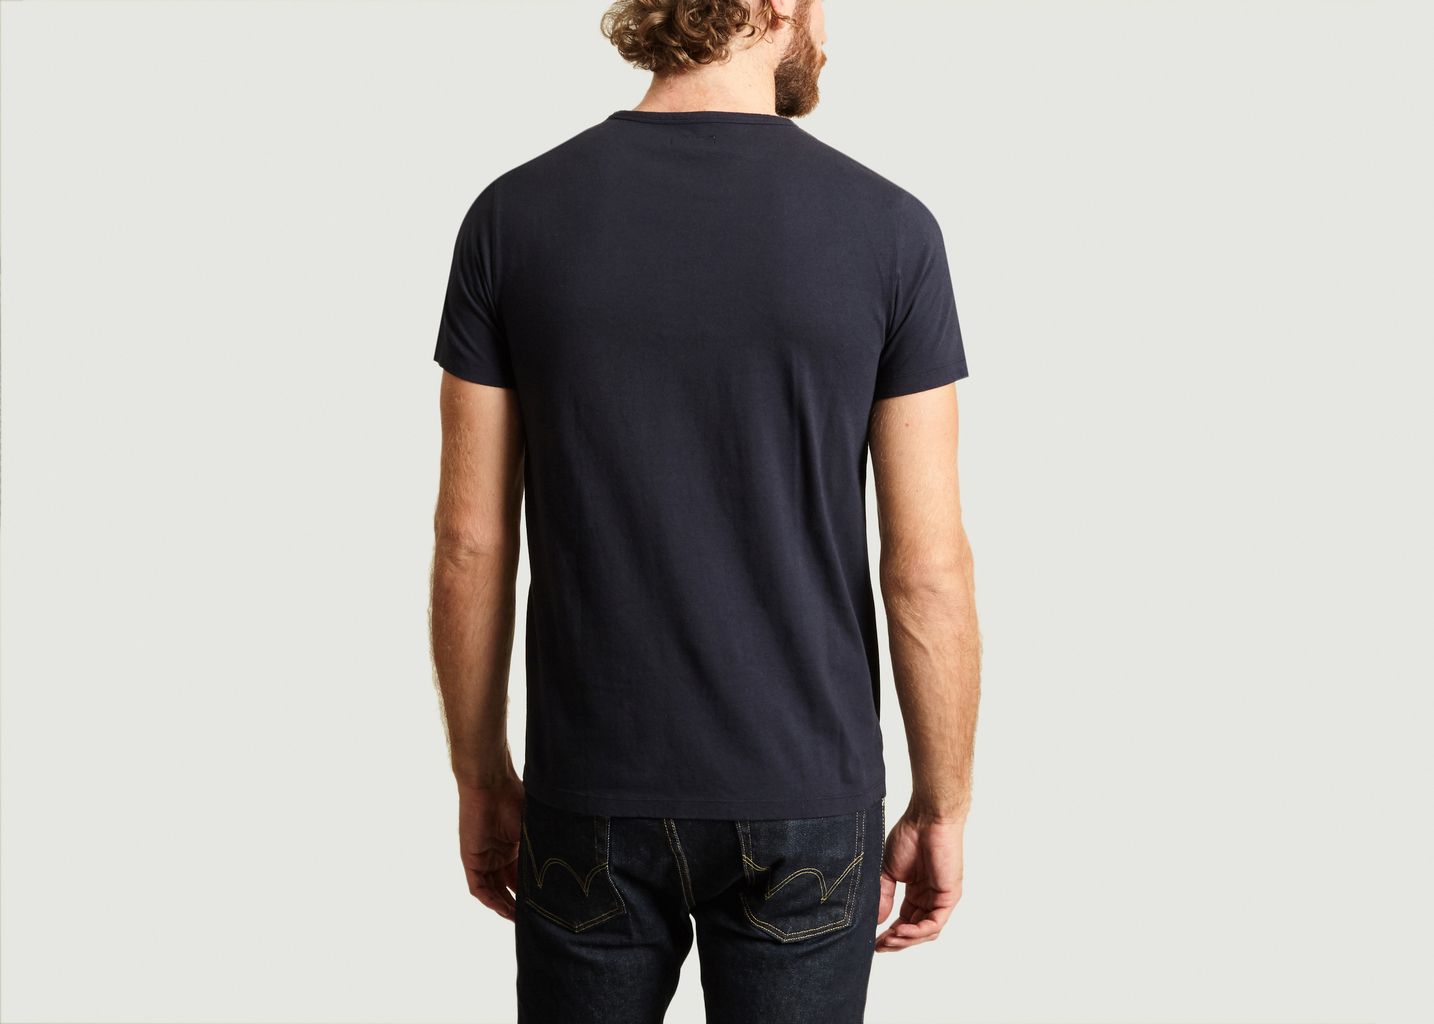 T-Shirt Print Ski Yann Morzine - Les Garçons Faciles